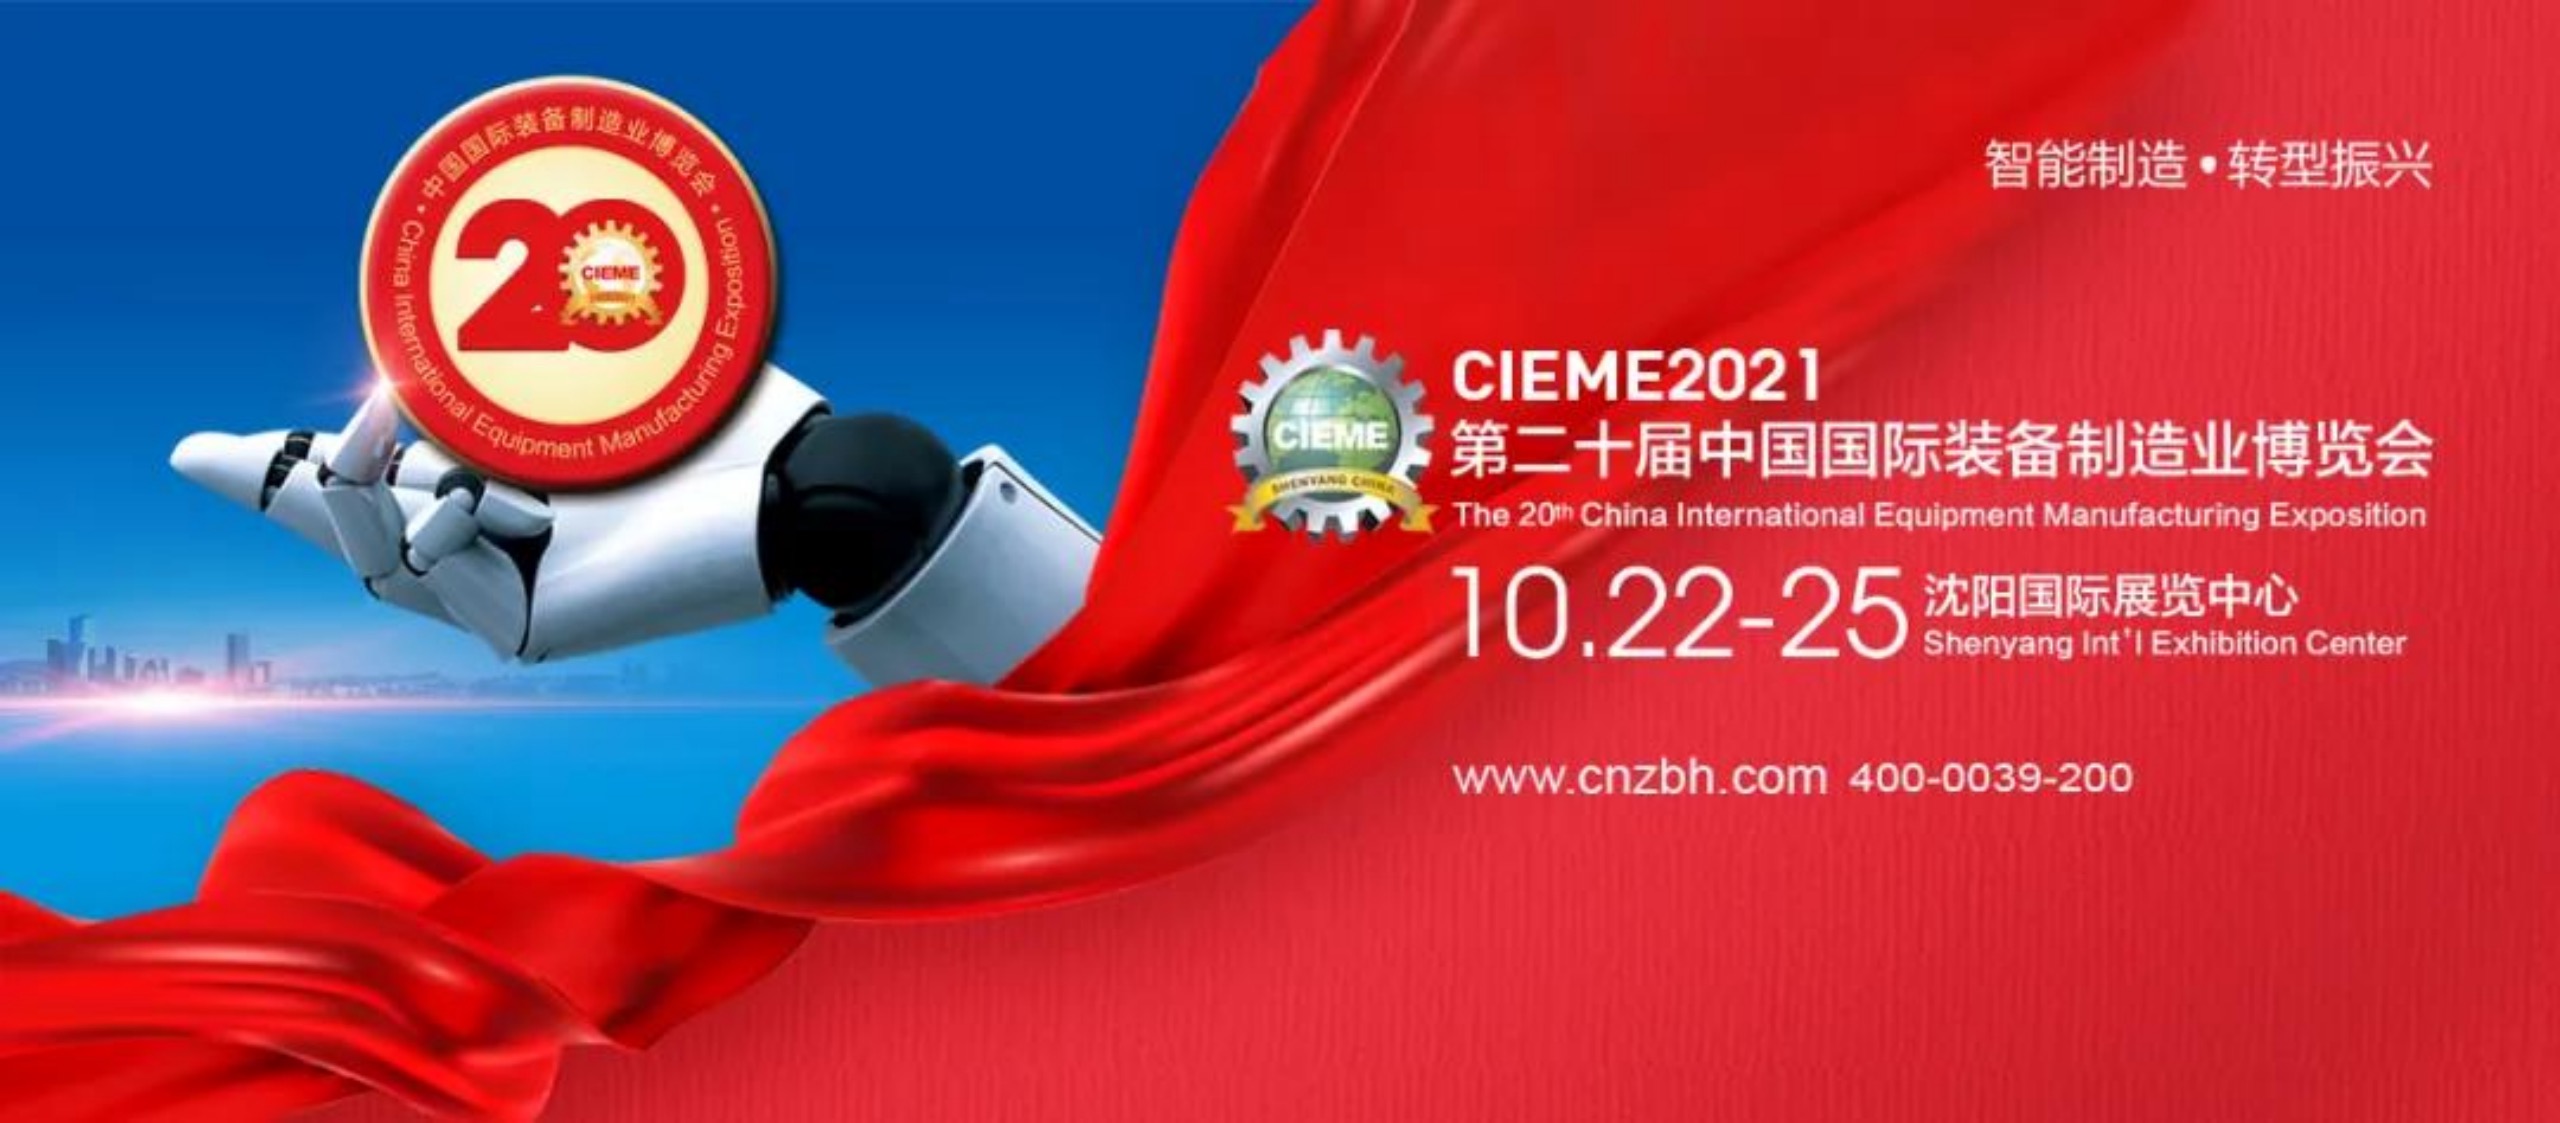 沈一数控EL32m复合加工数控车床 亮相CIEME2021中国国际装备制造业博览会